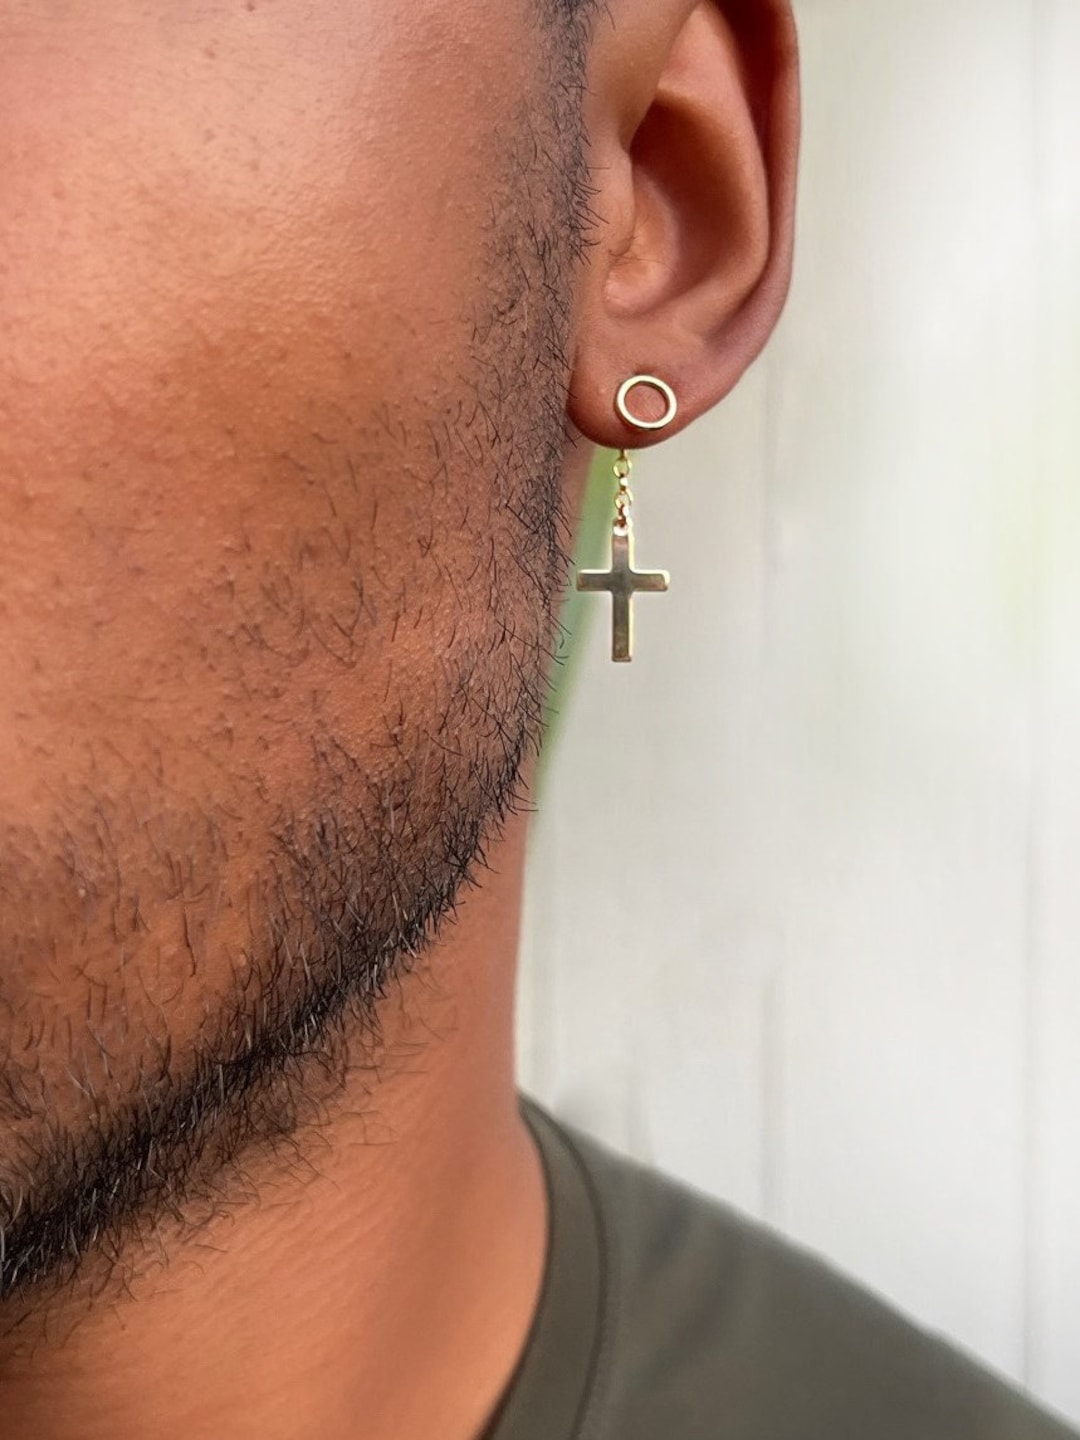 Buy PS CREATION 3 Pairs of Cross Earrings Dangle Hinged Men Earrings  Stainless Steel Cross hoop Earrings for Men and WomenSilverGoldBlack at  Amazonin